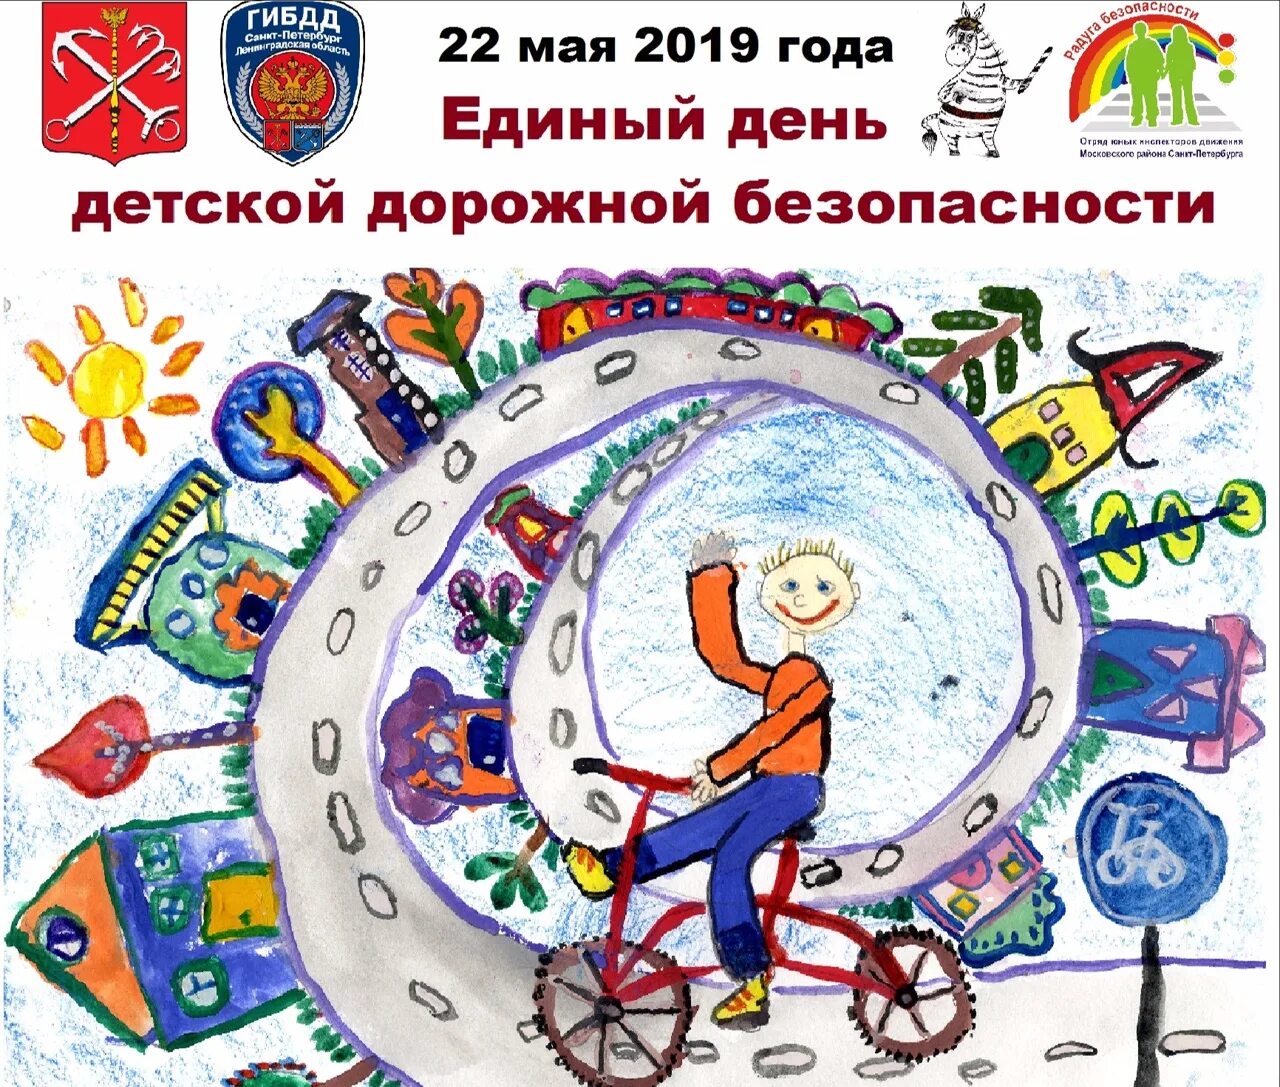 20 мая день праздник. Единый день детской дорожной безопасности в Санкт-Петербурге. День безопасности. Всемирный день дорожной безопасности. Единый день ПДД.